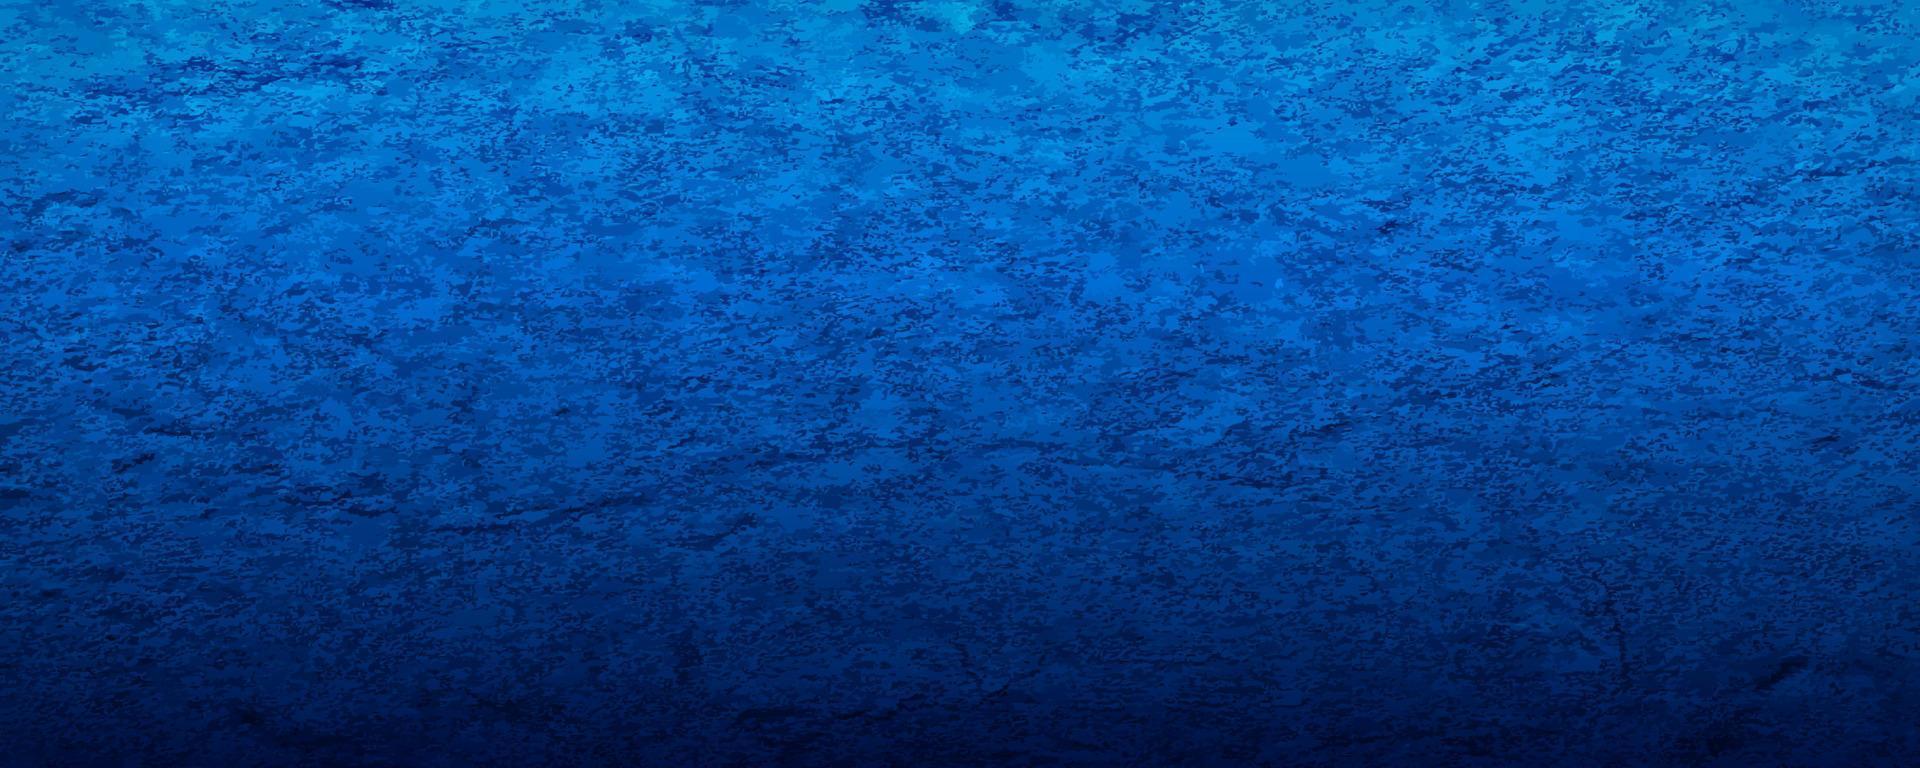 grunge textur effekt. distressed overlay grov texturerad. realistisk blå abstrakt bakgrund. grafisk designmall element betongvägg stilkoncept för banner, flyer, affisch eller broschyromslag vektor